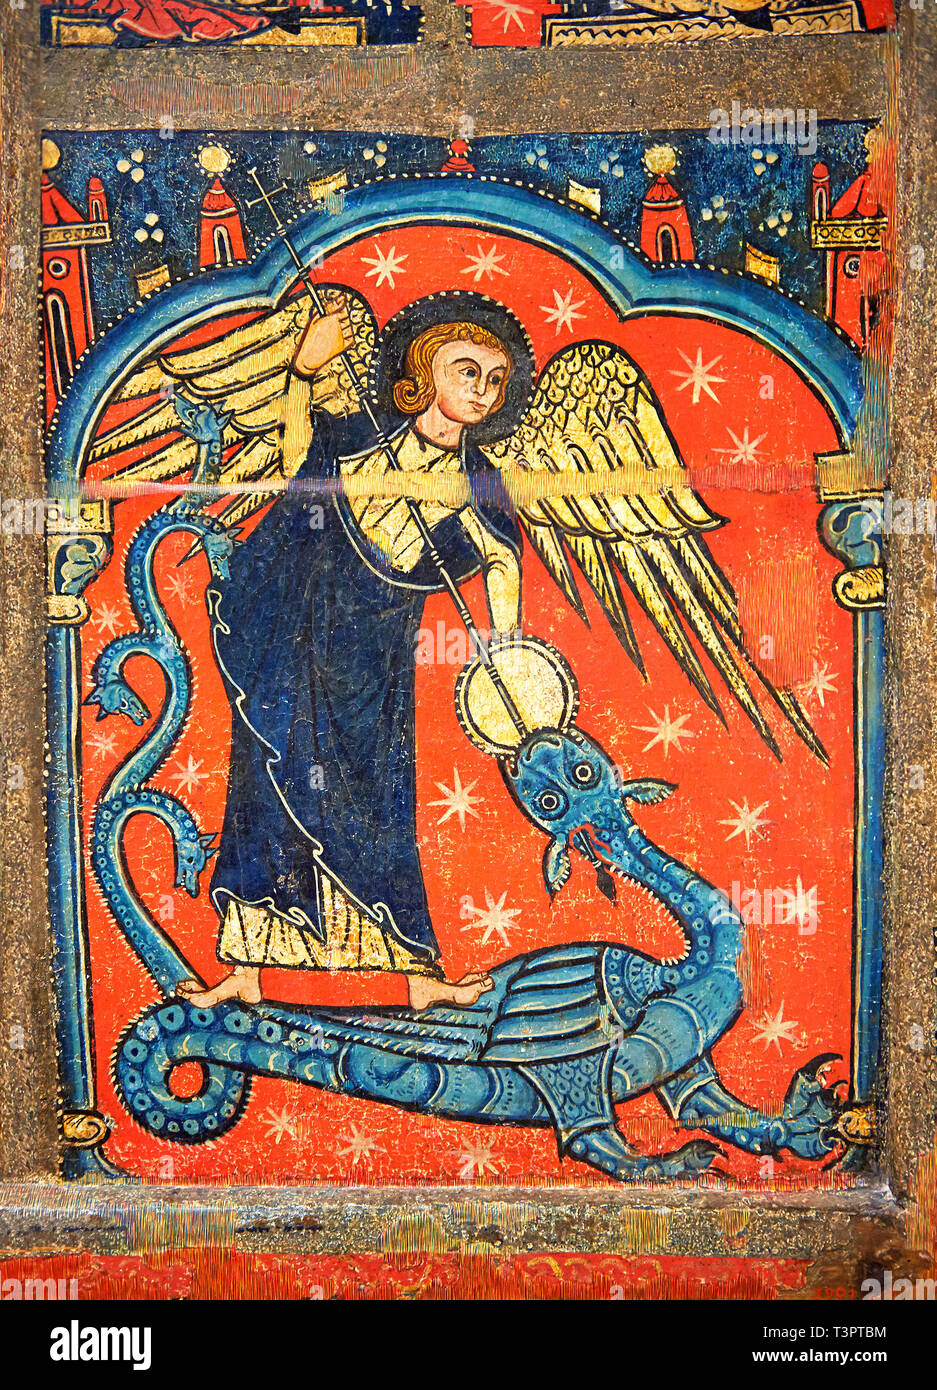 Autel gothique panneau représentant St Michael traineau le dragon. Fin du 13ème siècle, tempera sur panneau de bois de l'épinette de l'église de Sant Migu Banque D'Images